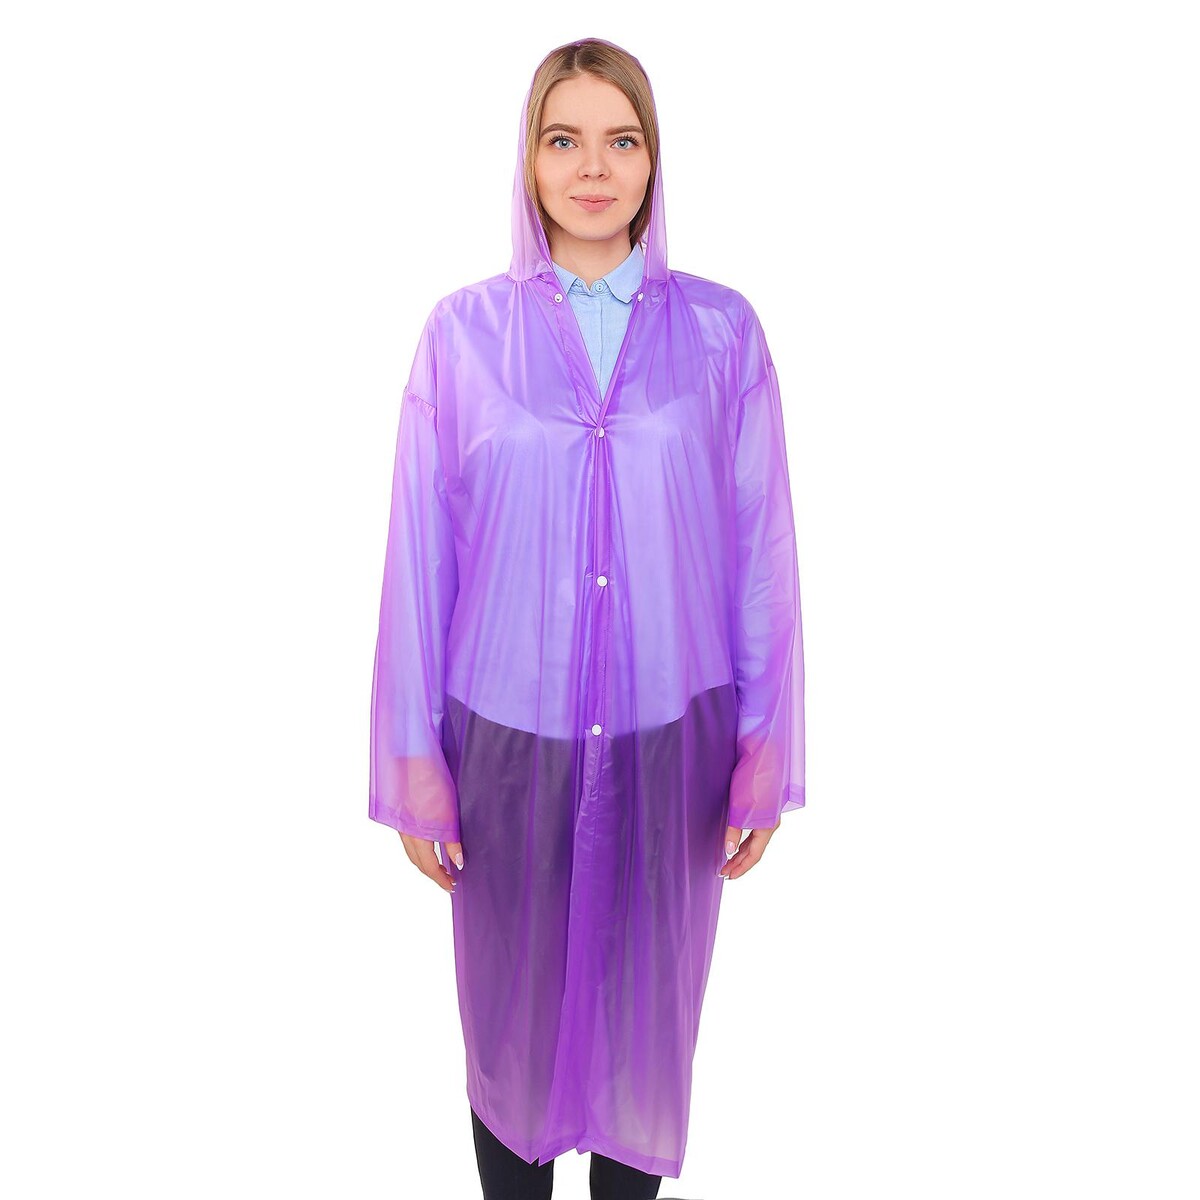 Дождевик-плащ взрослый, универсальный, цвет фиолетовый дождевик плащ взрослый универсальный фиолетовый